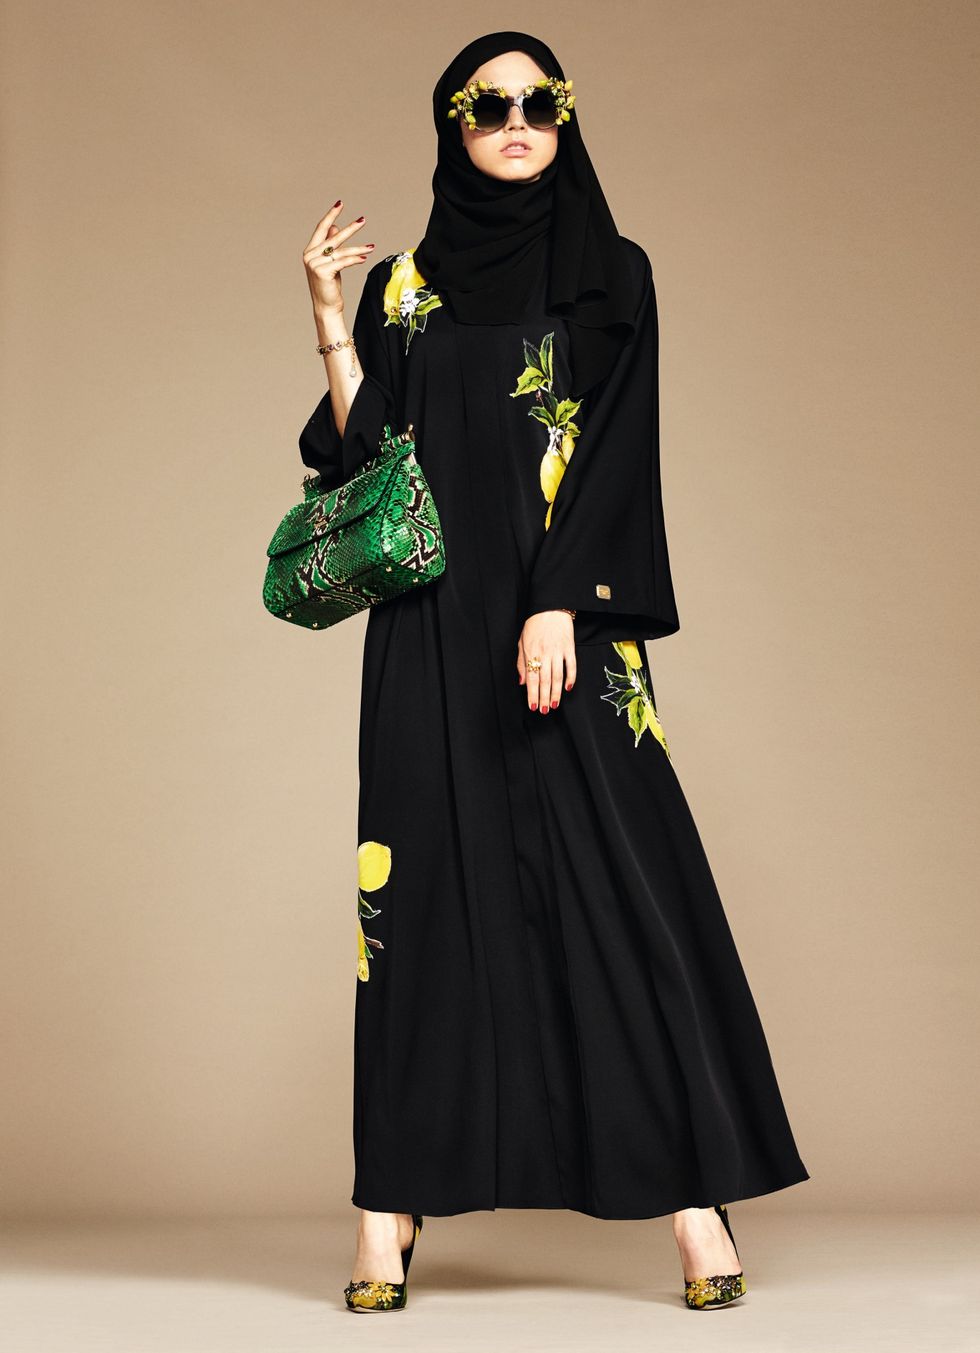 Dolce & Gabbana hijab and abaya collection